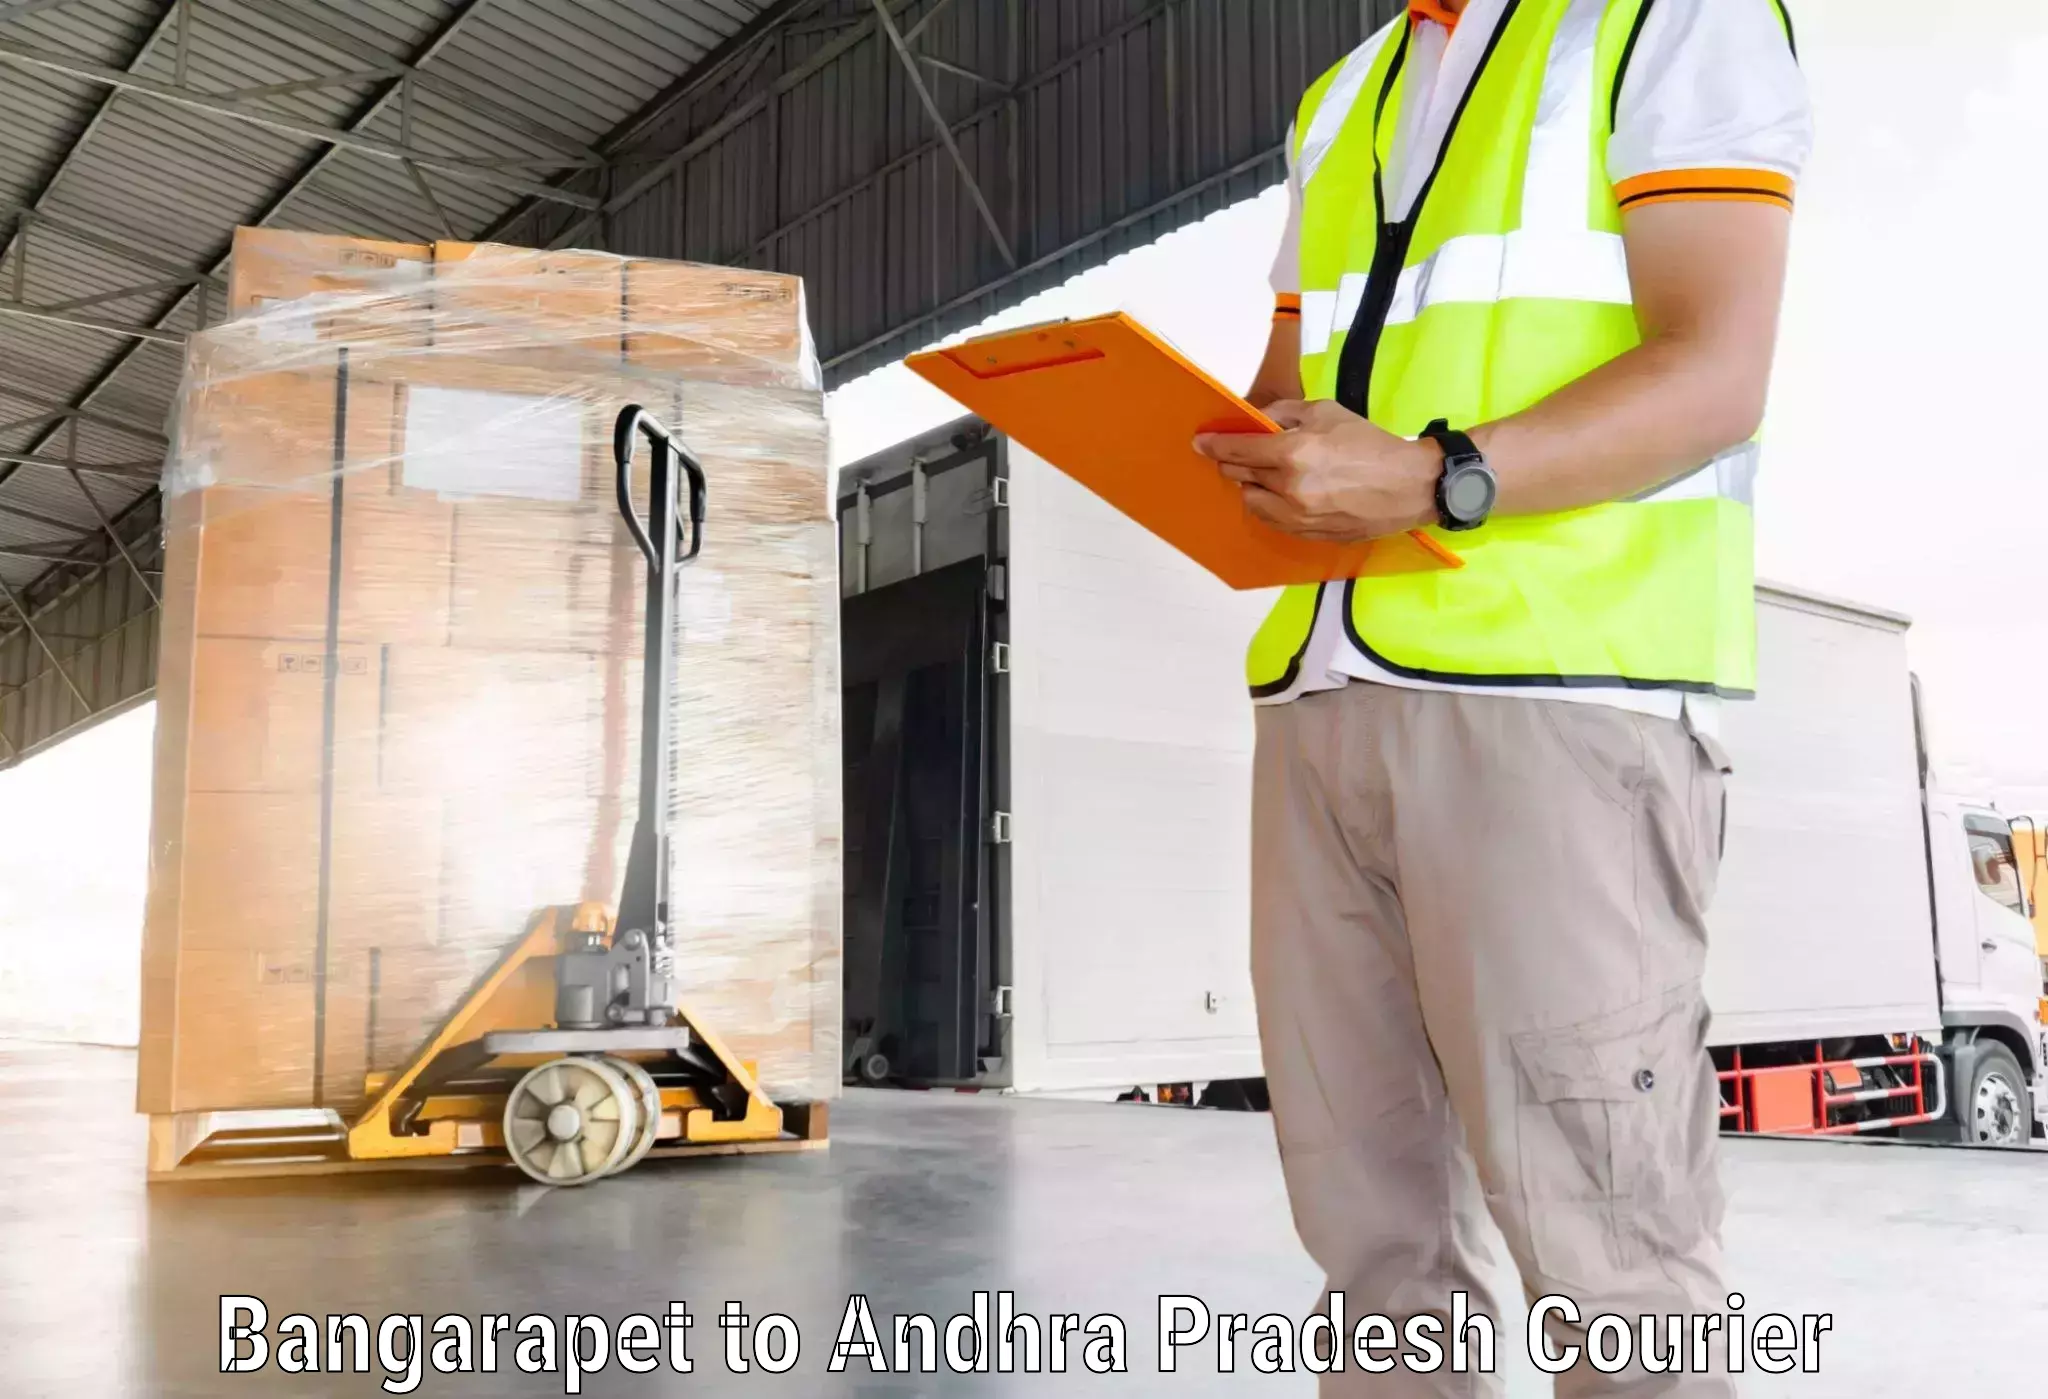 Express mail service in Bangarapet to Andhra Pradesh